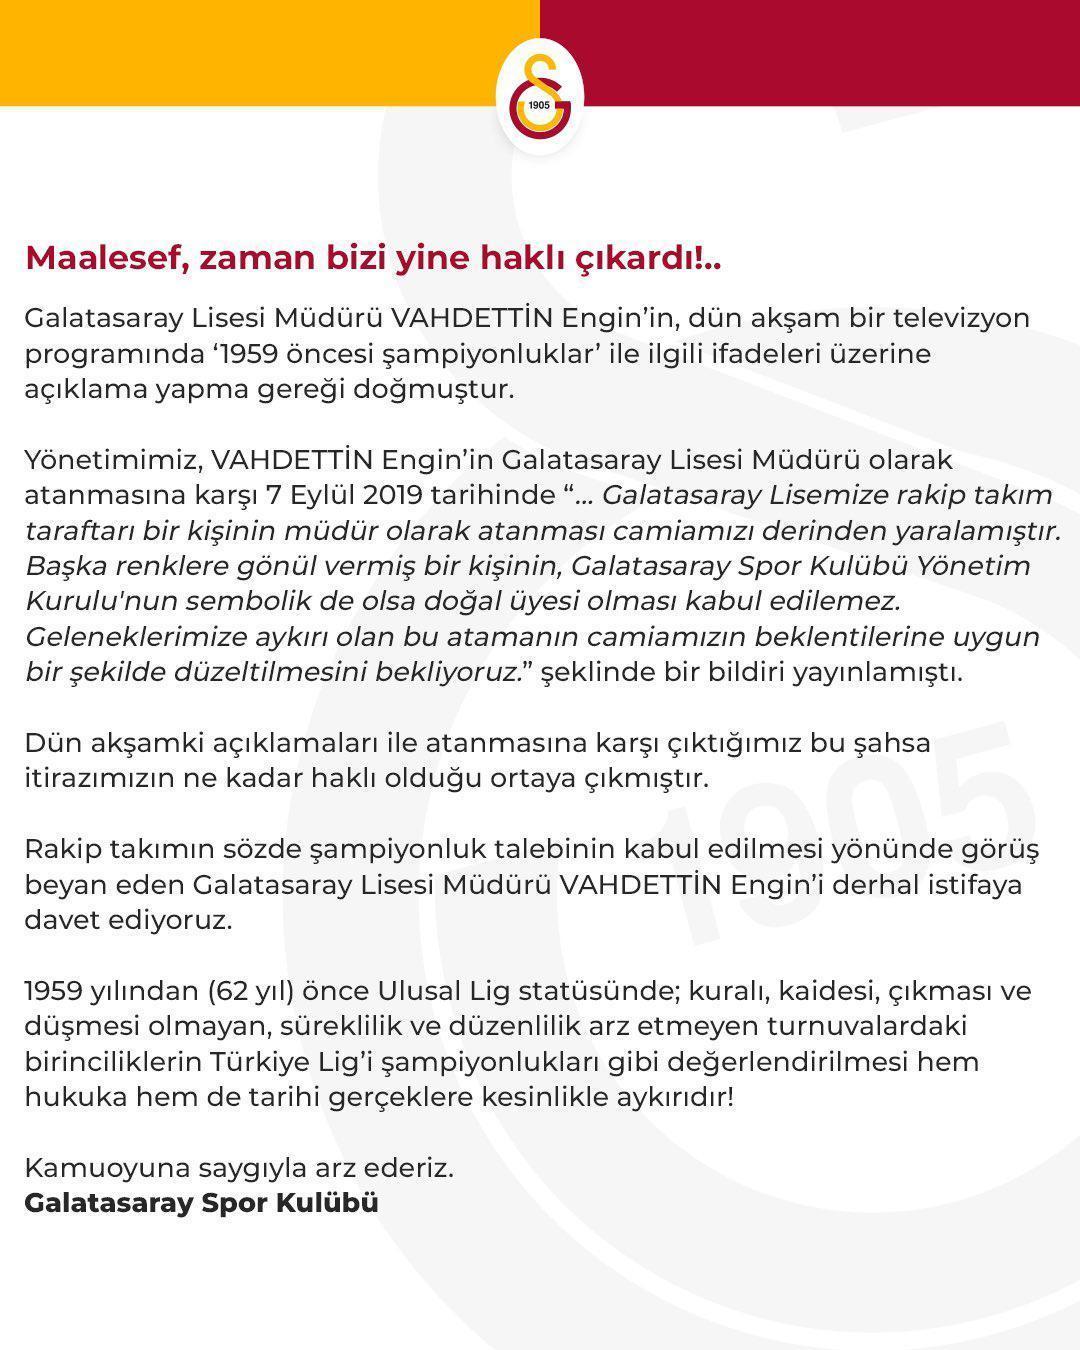 Galatasarayda son dakika Vahdettin Engine istifa çağrısı